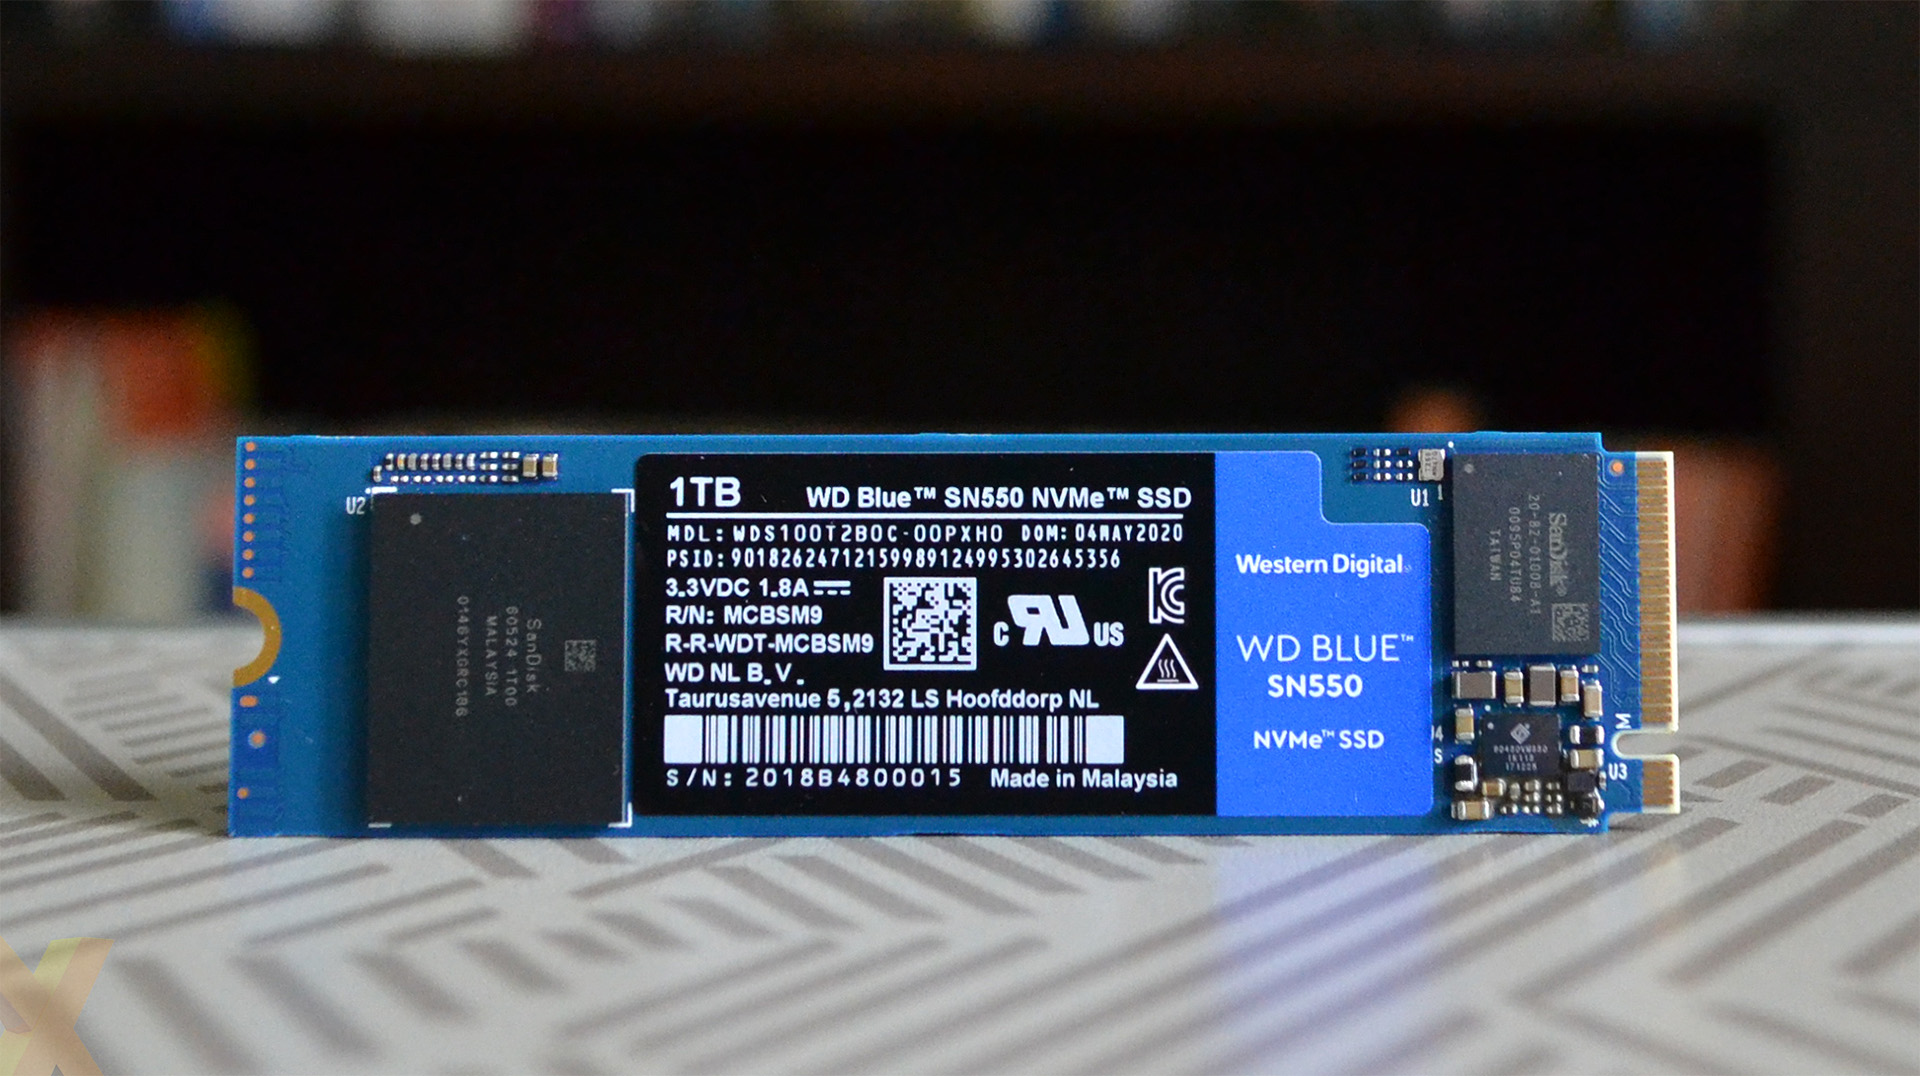 Review: WD Blue SN550 NVMe PCIe SSD (1TB) - Storage - HEXUS.net 